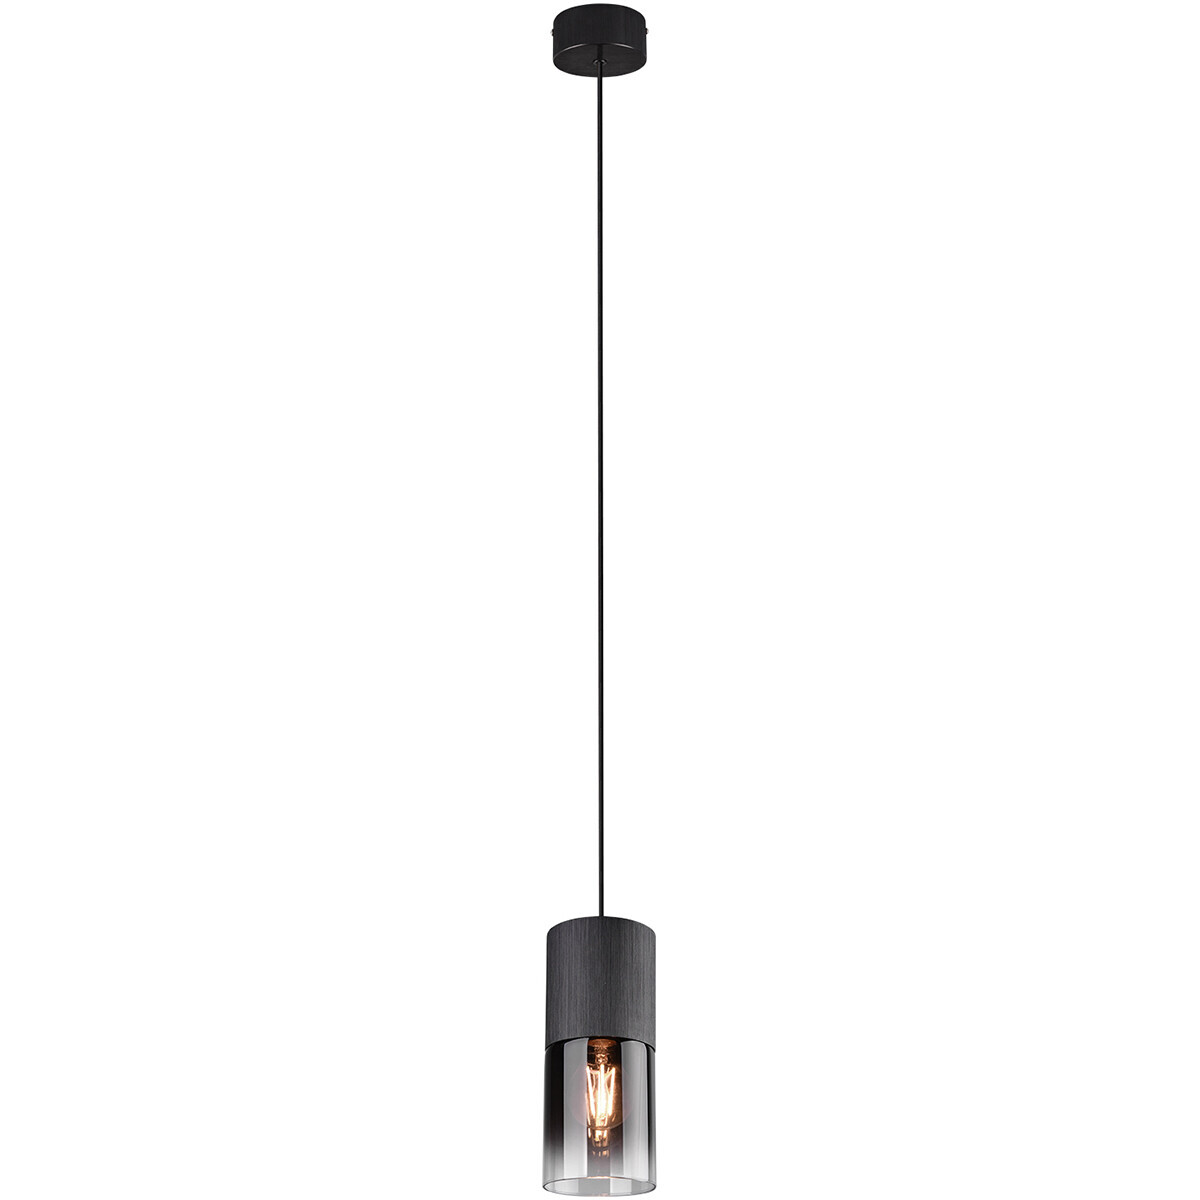 BES LED LED Hanglamp - Trion Borin - E27 Fitting - Rond - Mat Zwart - Aluminium